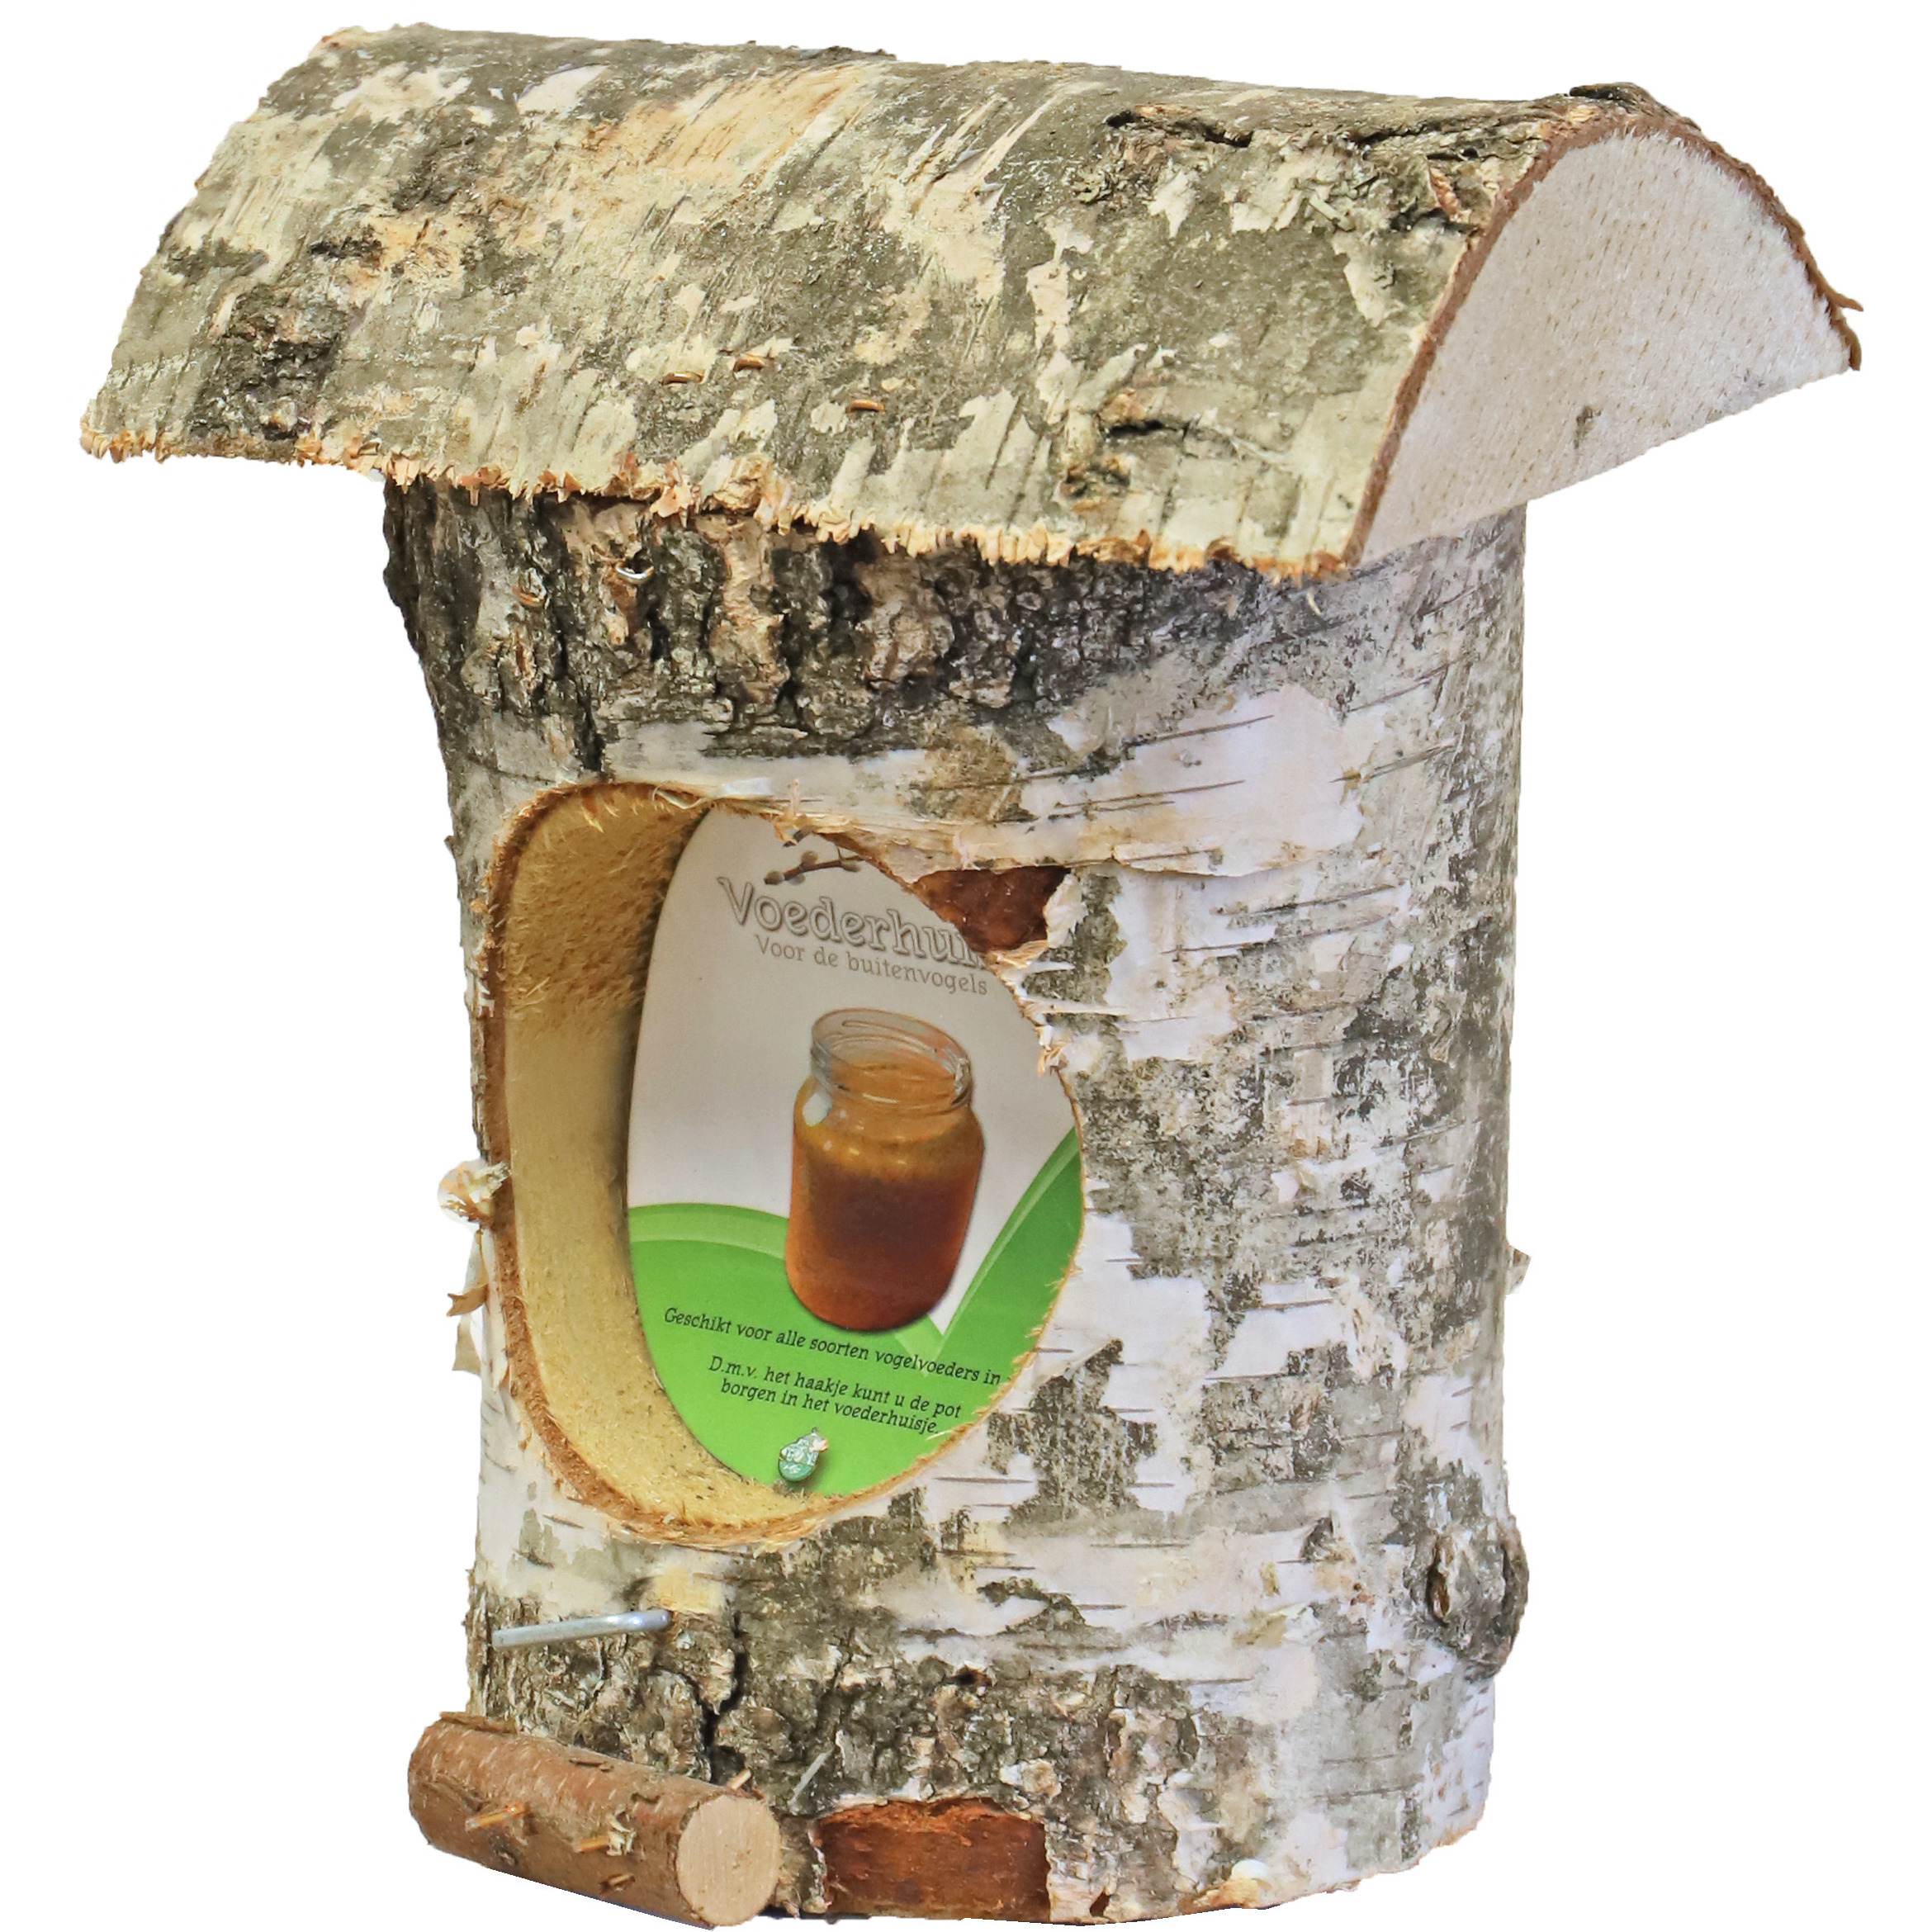 Vogelhuisje-voederhuisje-pindakaashuisje berkenhout 27 cm